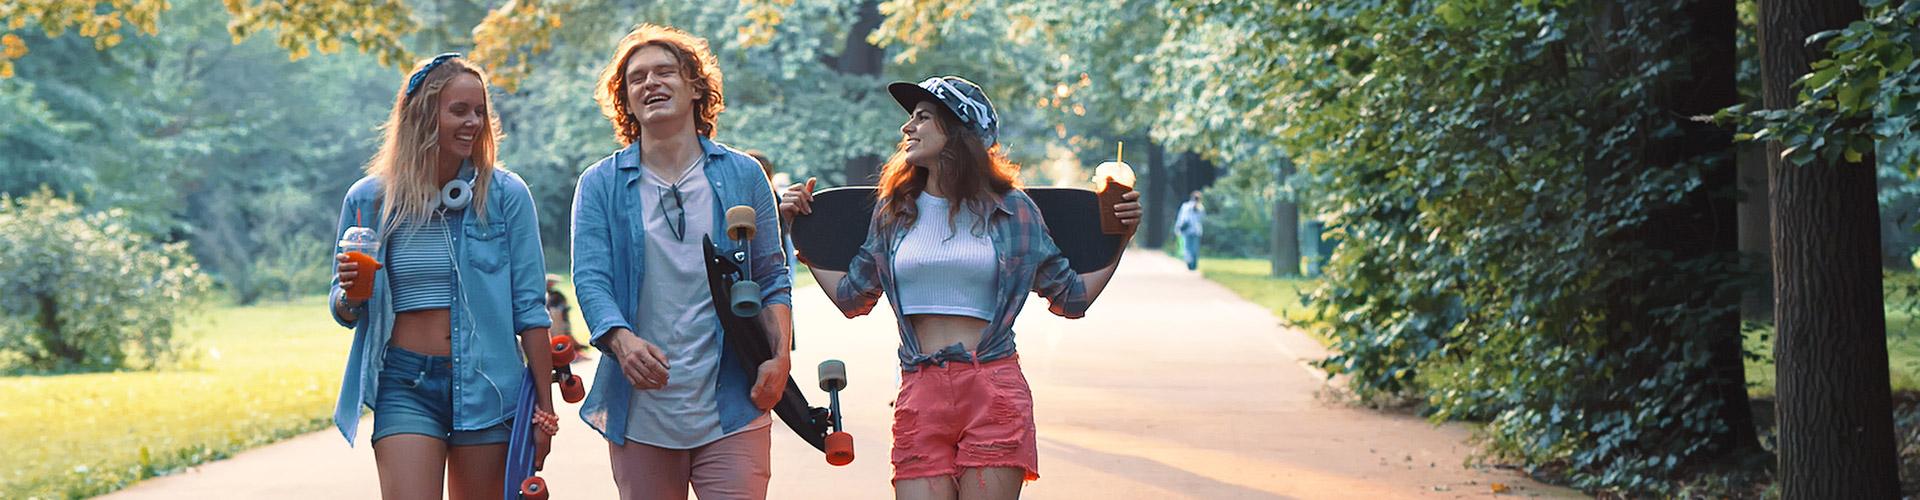 Cuenta Joven Up - Grupo de jovenes vestidos con ropa moderna con patinetes, sonriendo junto a un parque rodeado de arboles